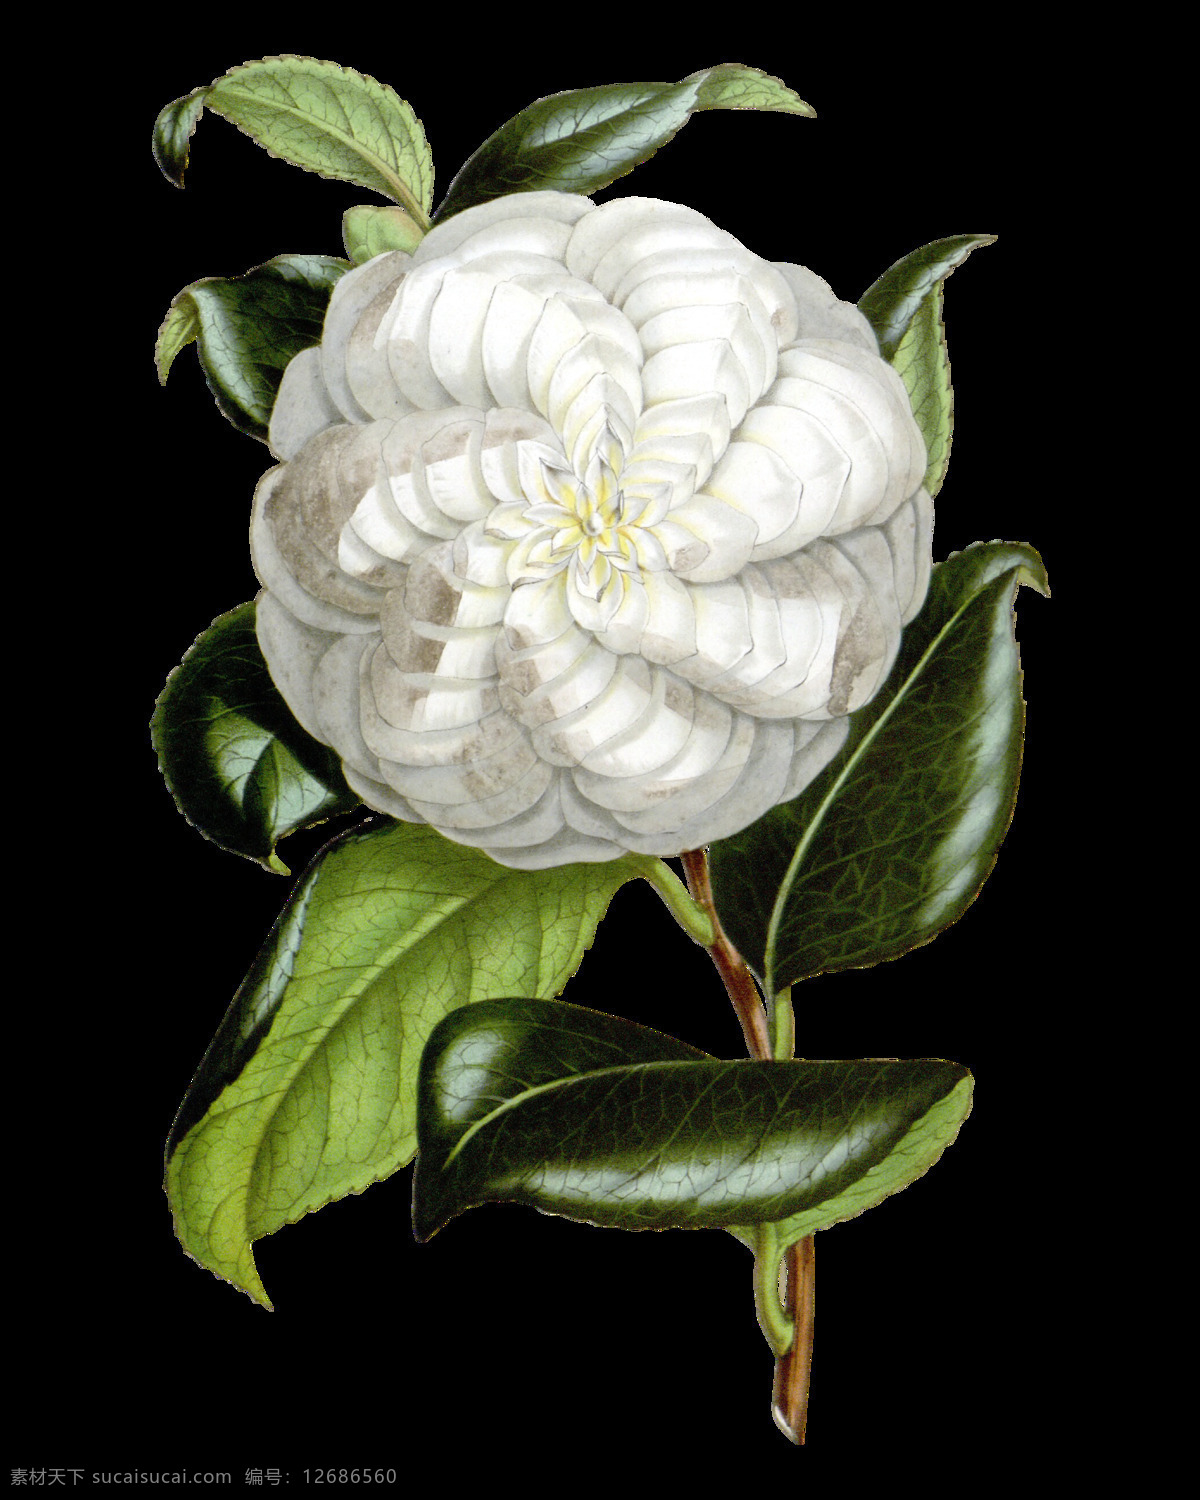 白色 绿叶 茶花 装饰 元素 白色茶花 含苞待放 梦幻花朵 矢量花朵 手绘花朵素材 鲜花花朵 鲜花花蕾 鲜花素材花卉